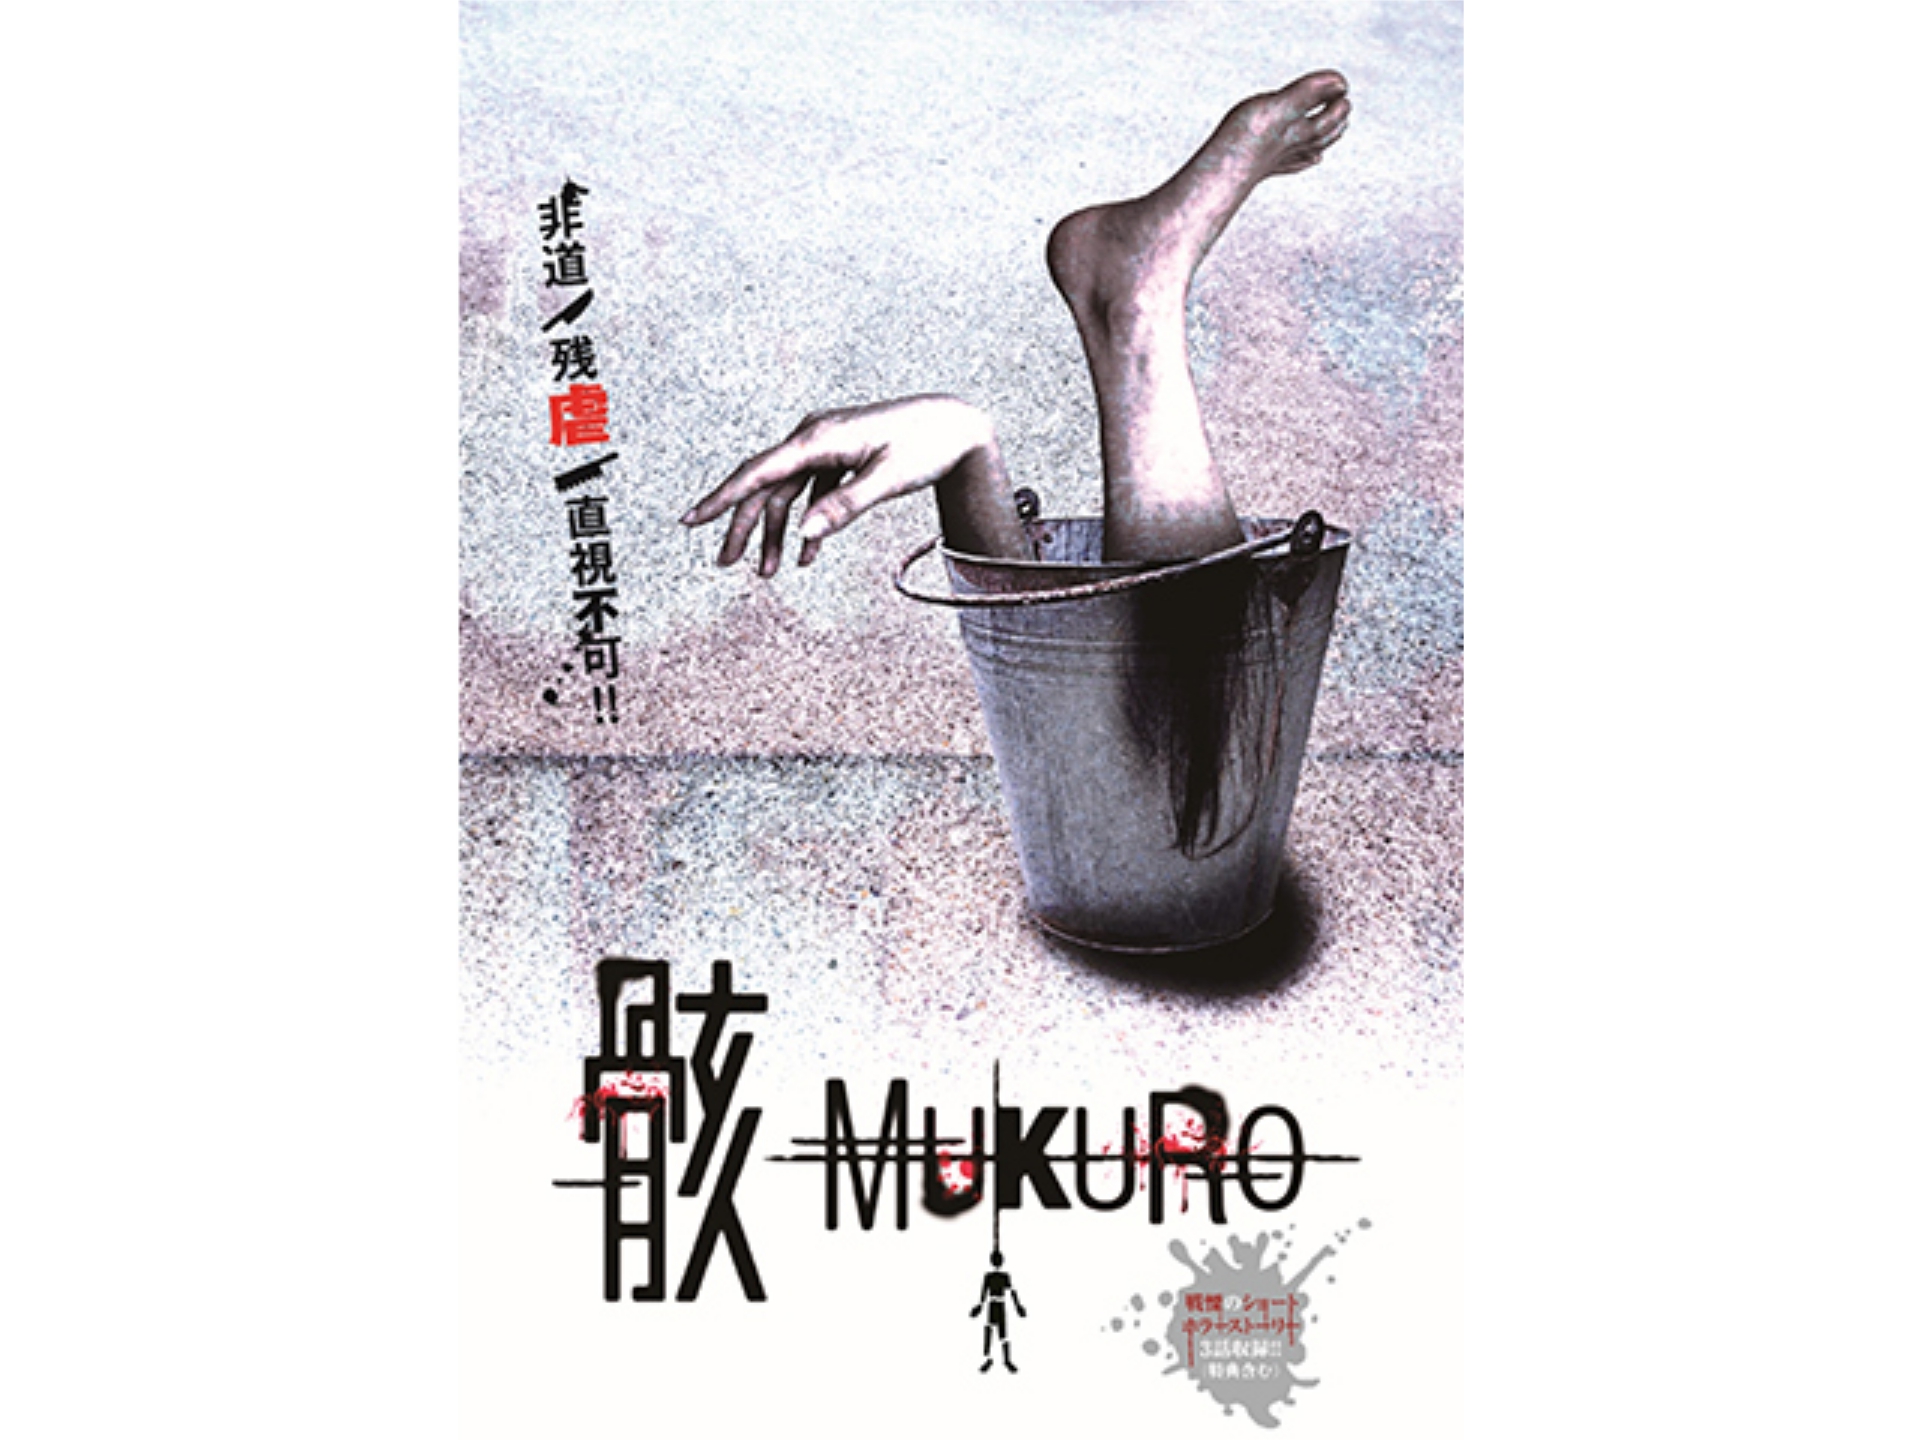 映画 骸 Mukuro の動画 初月無料 動画配信サービスのビデオマーケット